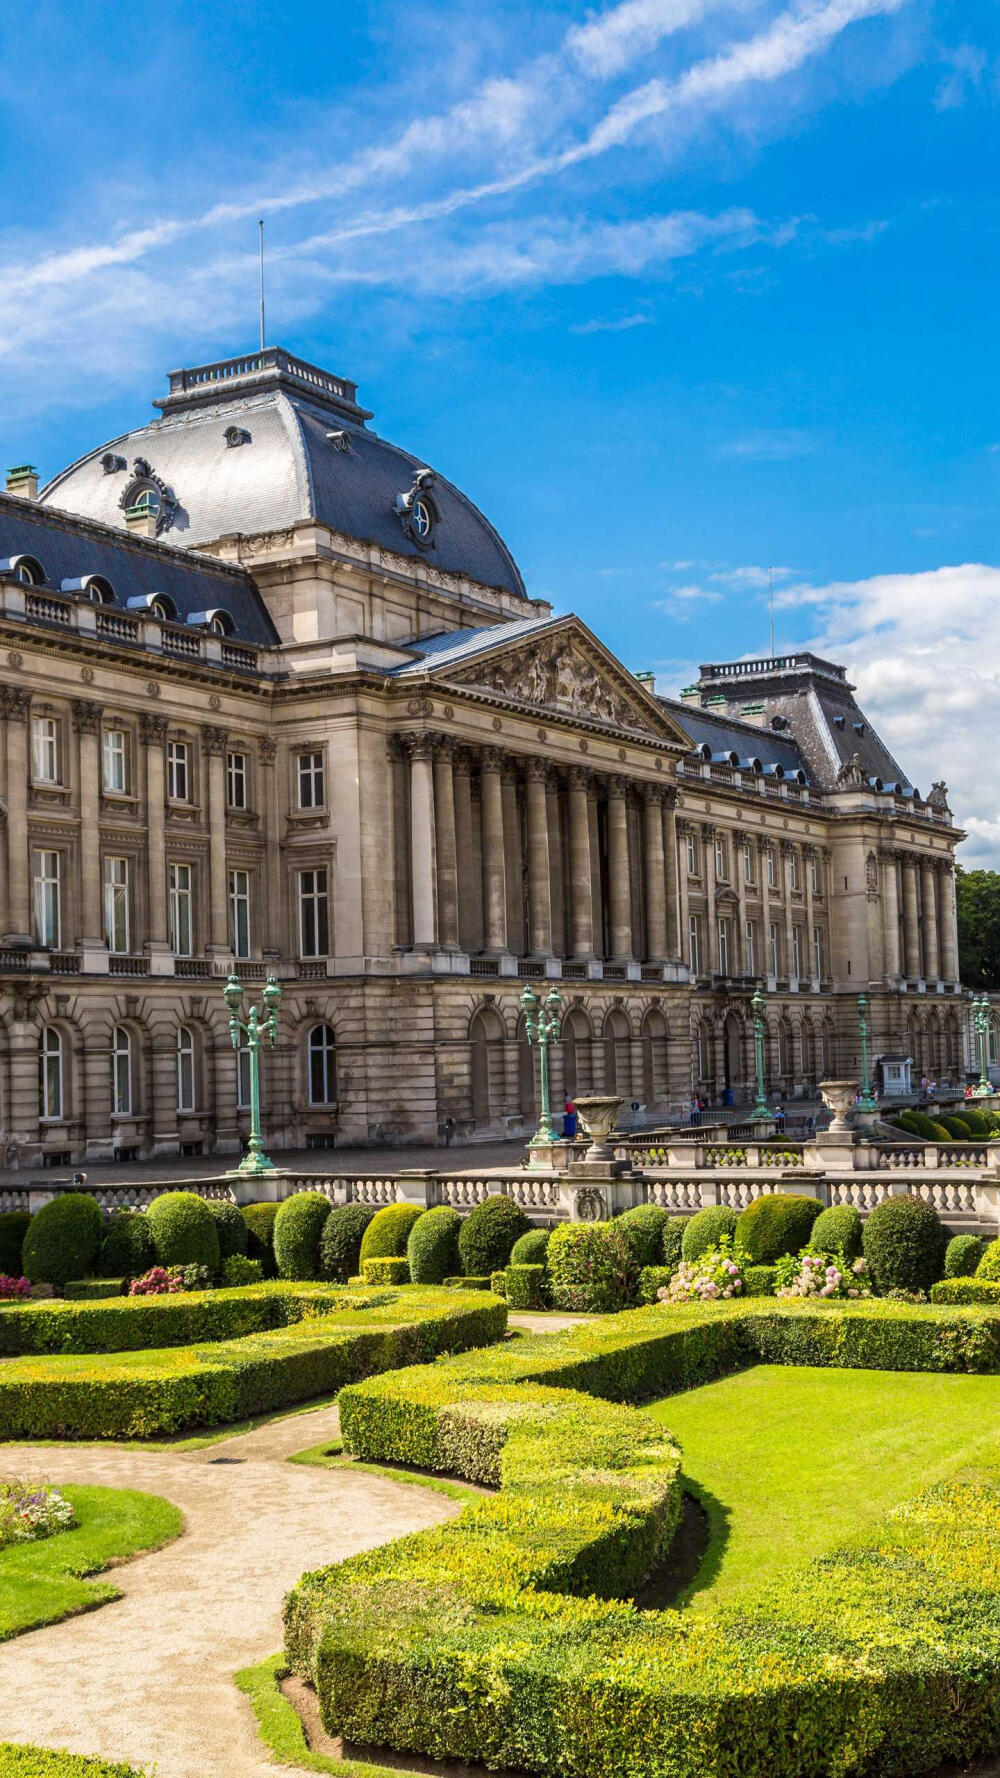 布鲁塞尔皇宫,比利时最雄伟的建筑,大理石的建筑上布满了浮雕,气势